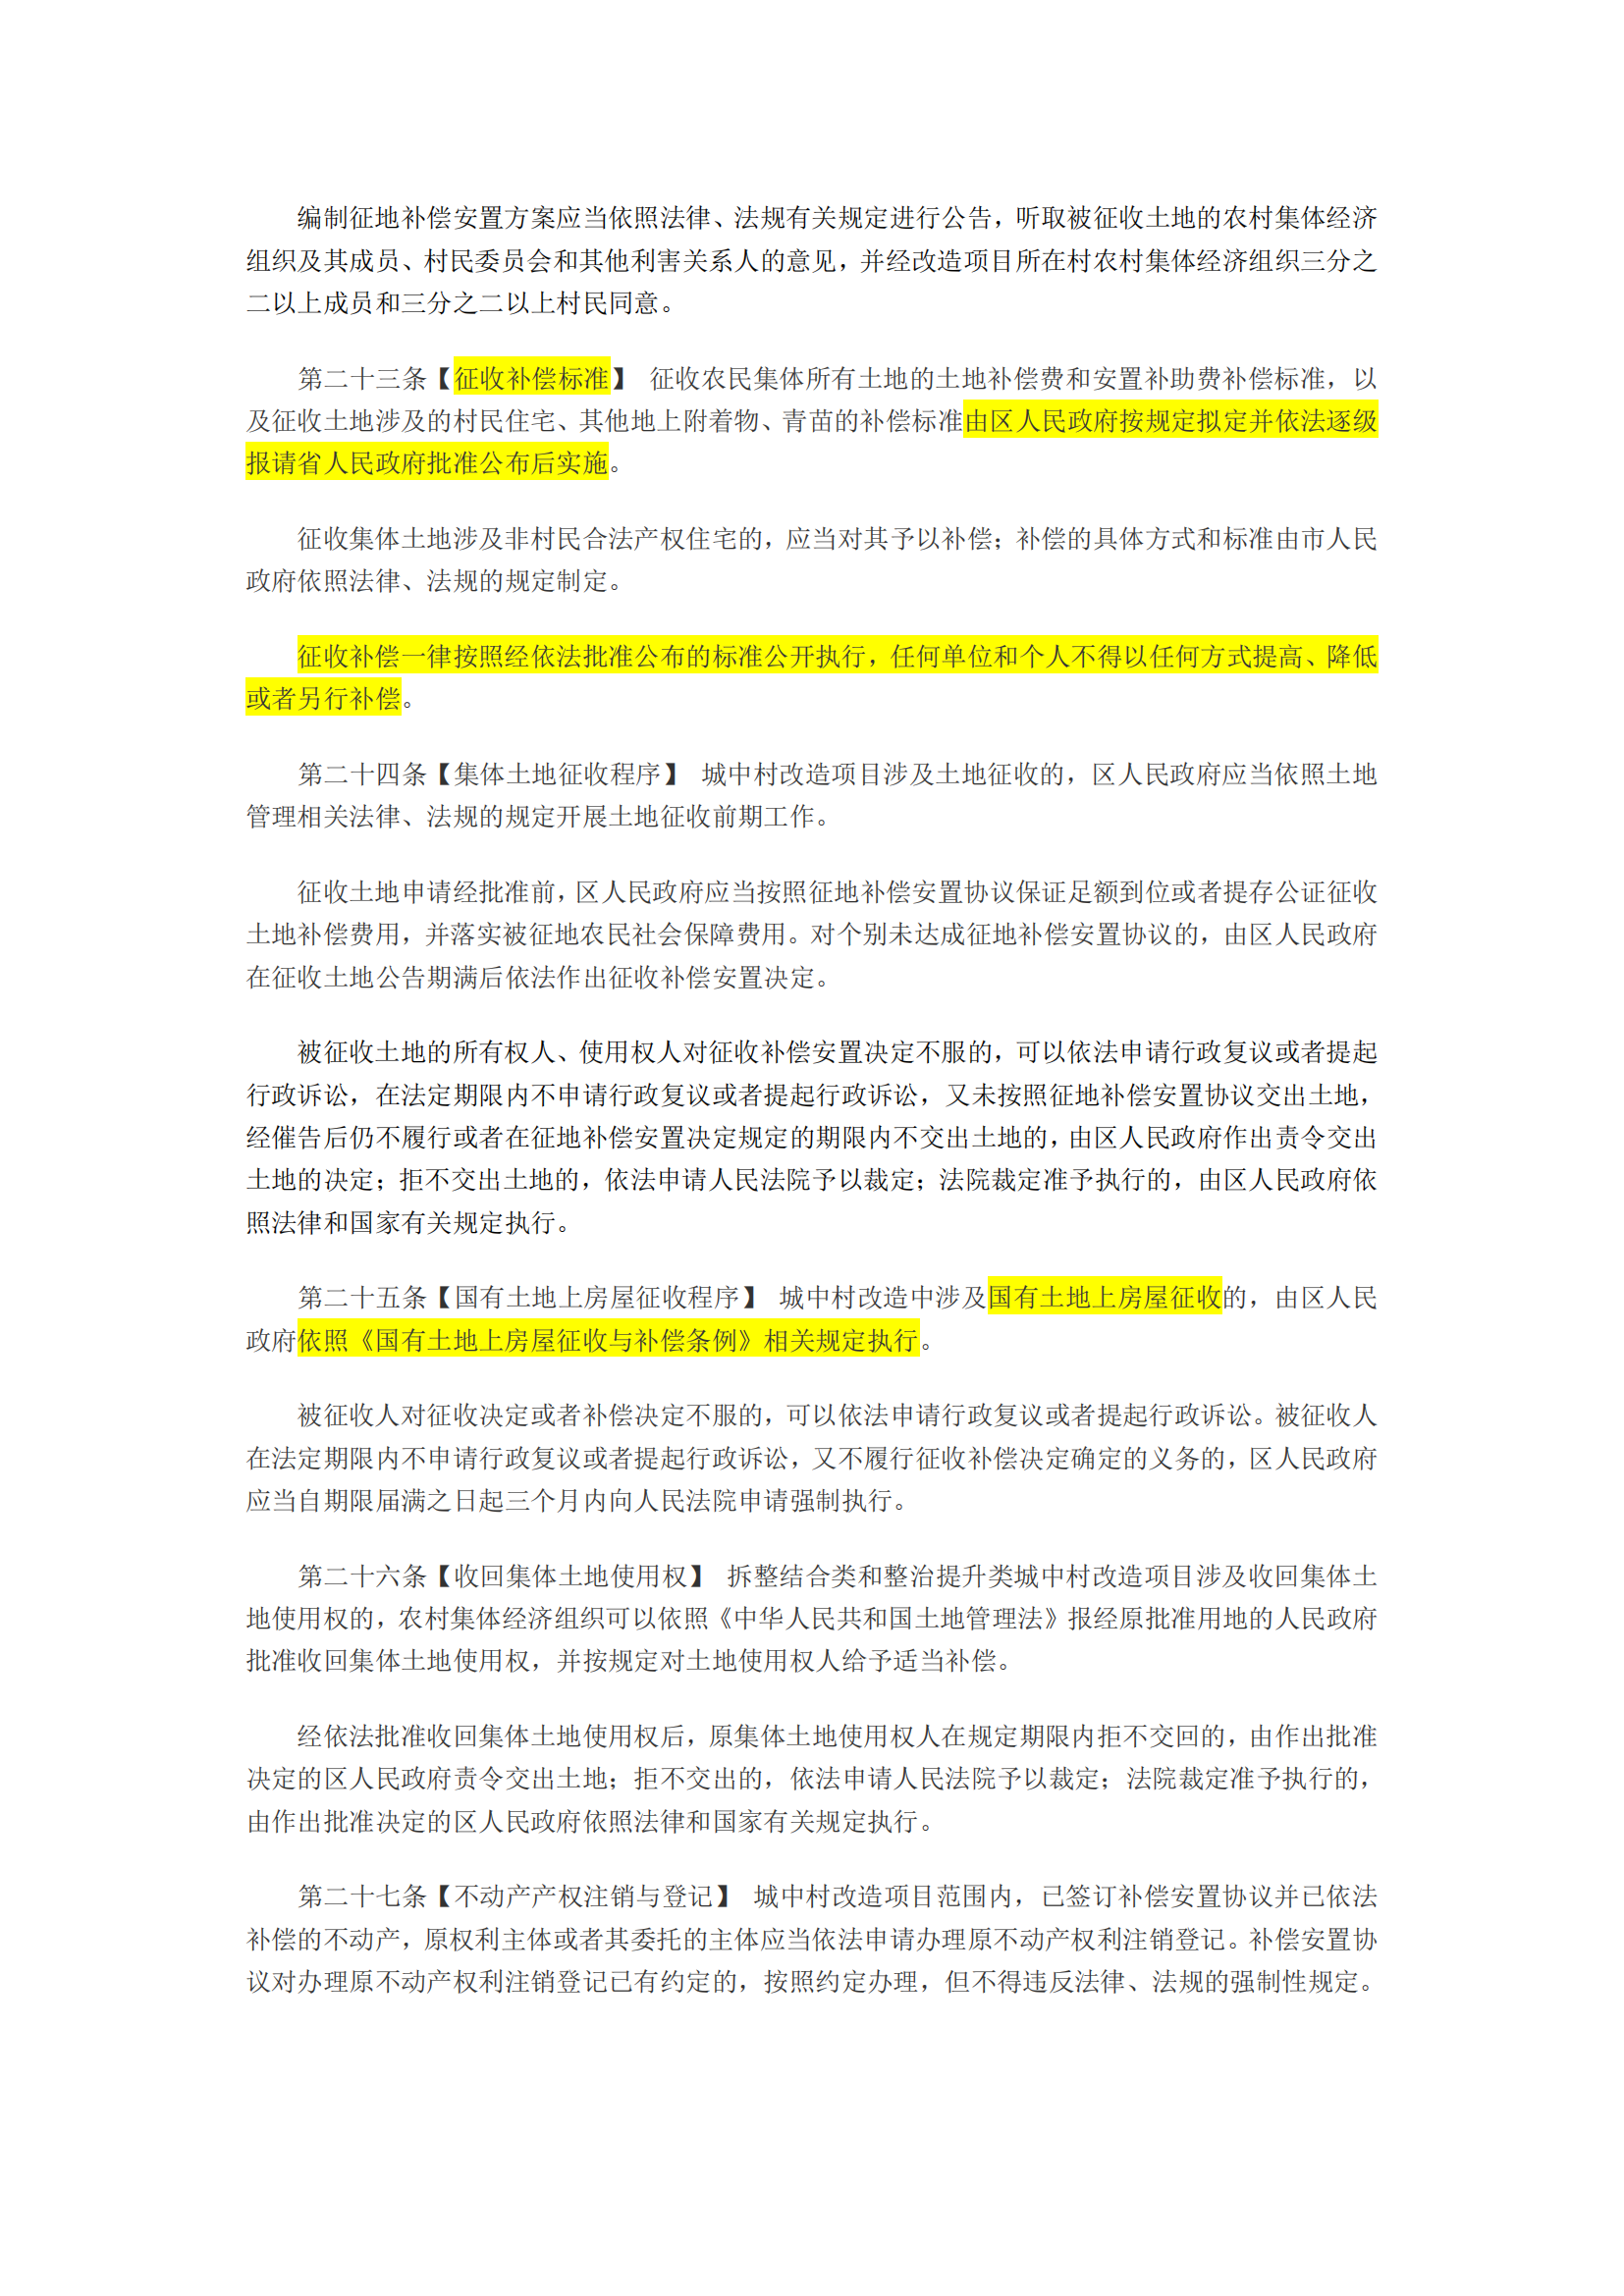 广州市城中村改造条例(征求意见稿，批注版)_04.png